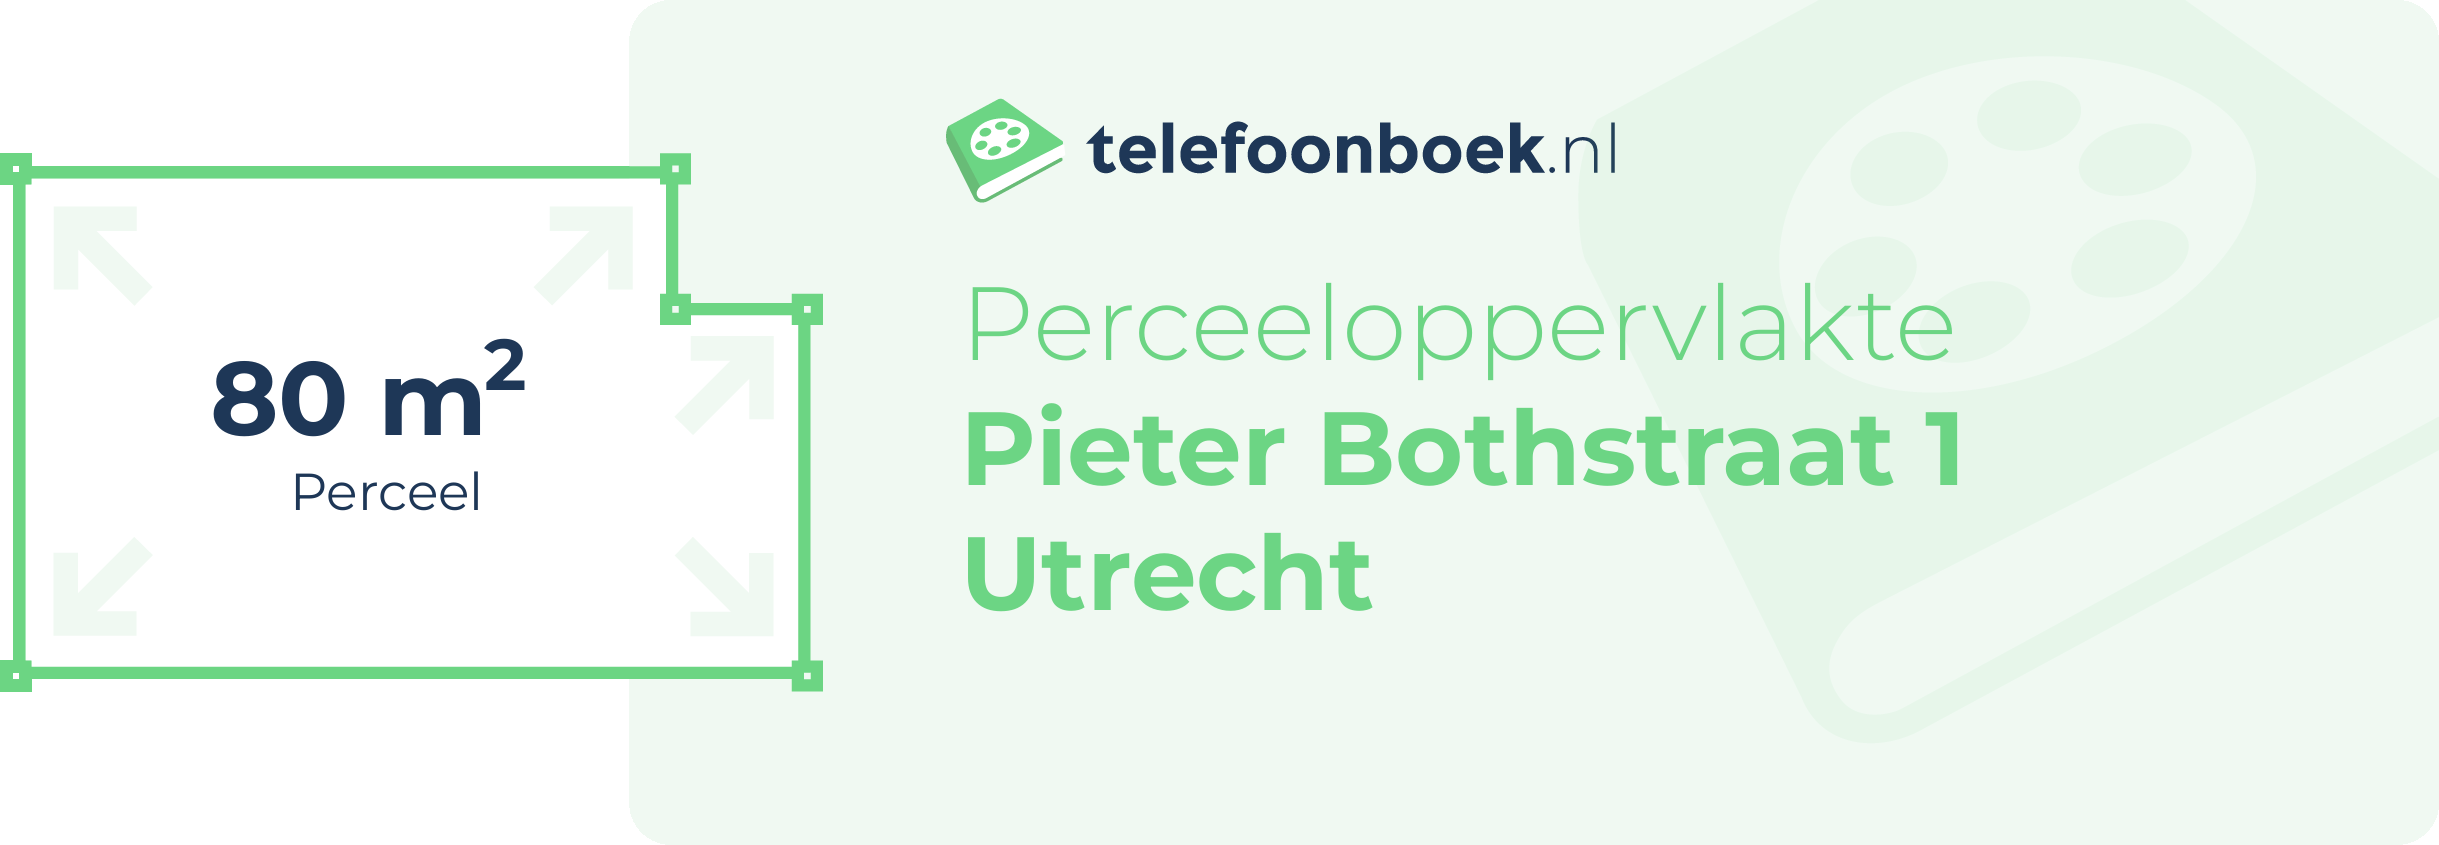 Perceeloppervlakte Pieter Bothstraat 1 Utrecht